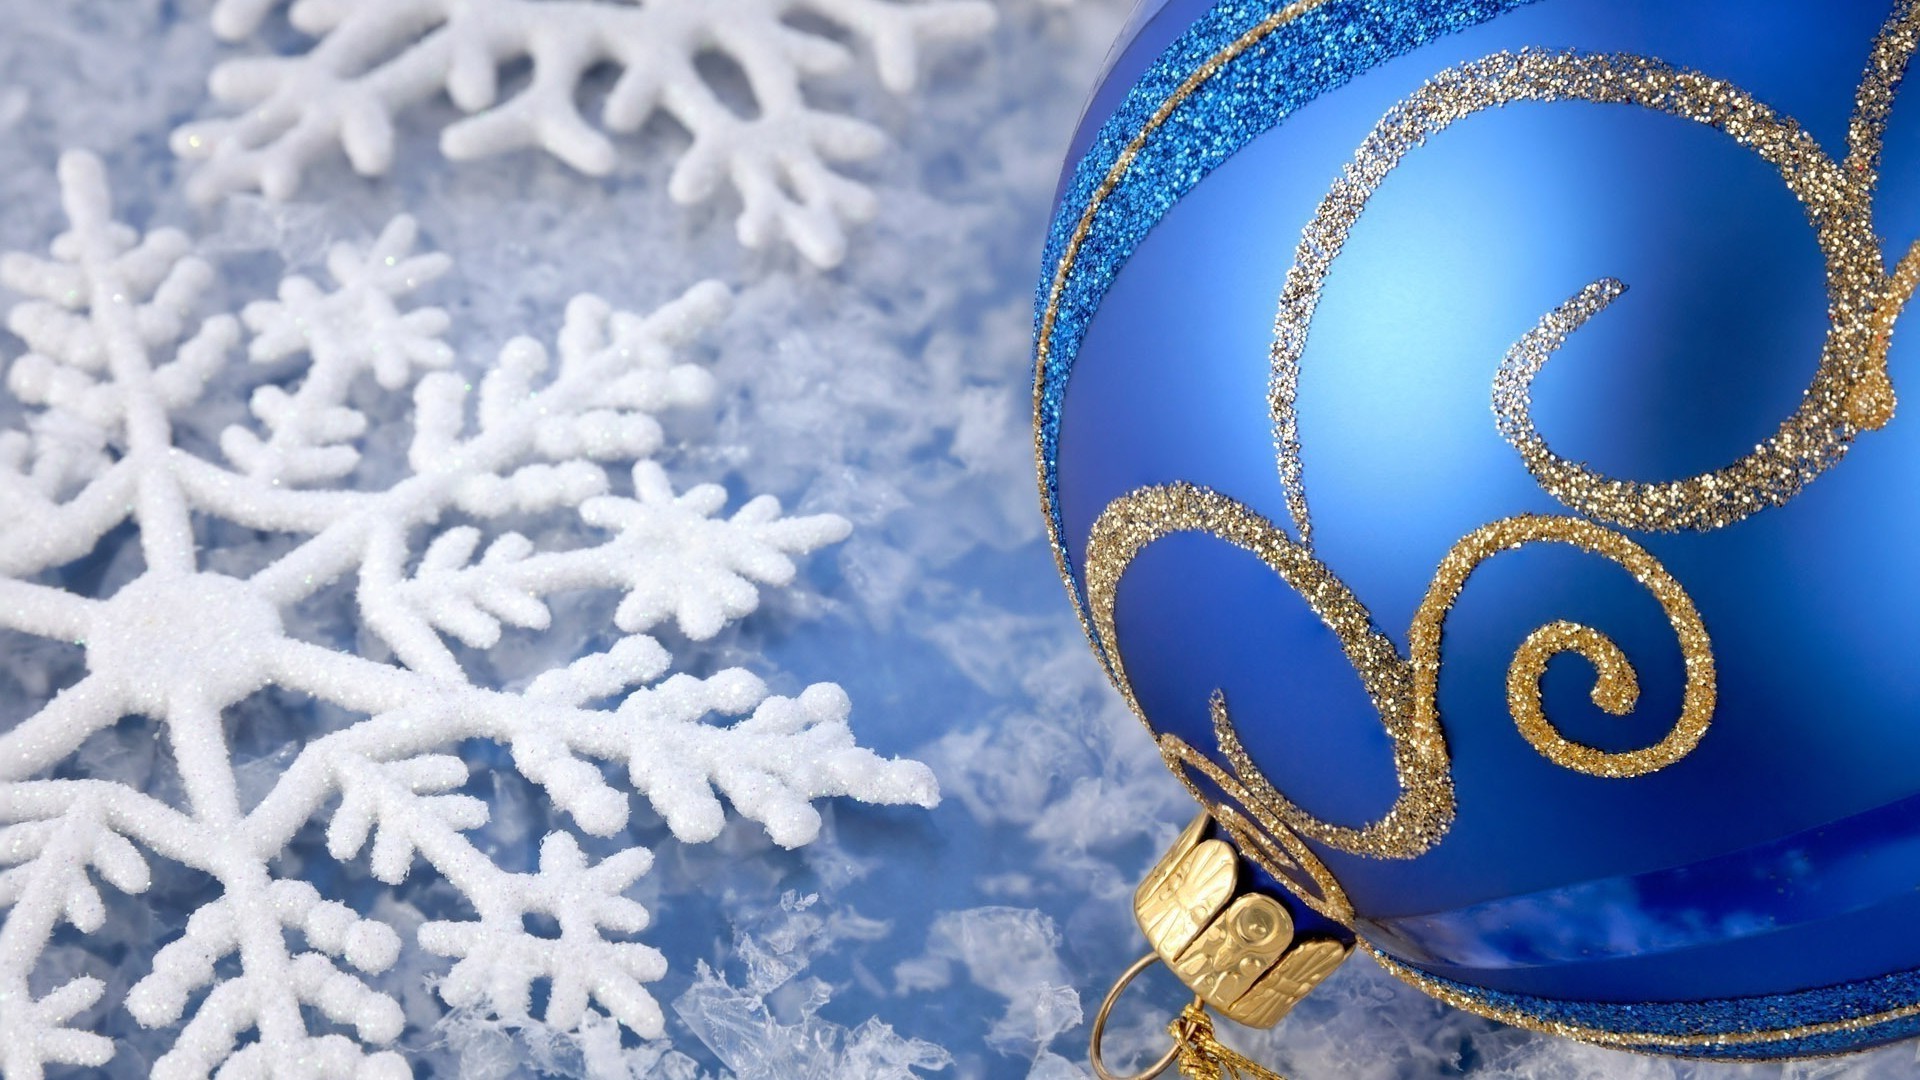 новый год зима мороз снег рождество рабочего стола блестят украшения светит сезон кристалл яркий праздник аннотация природа холодная